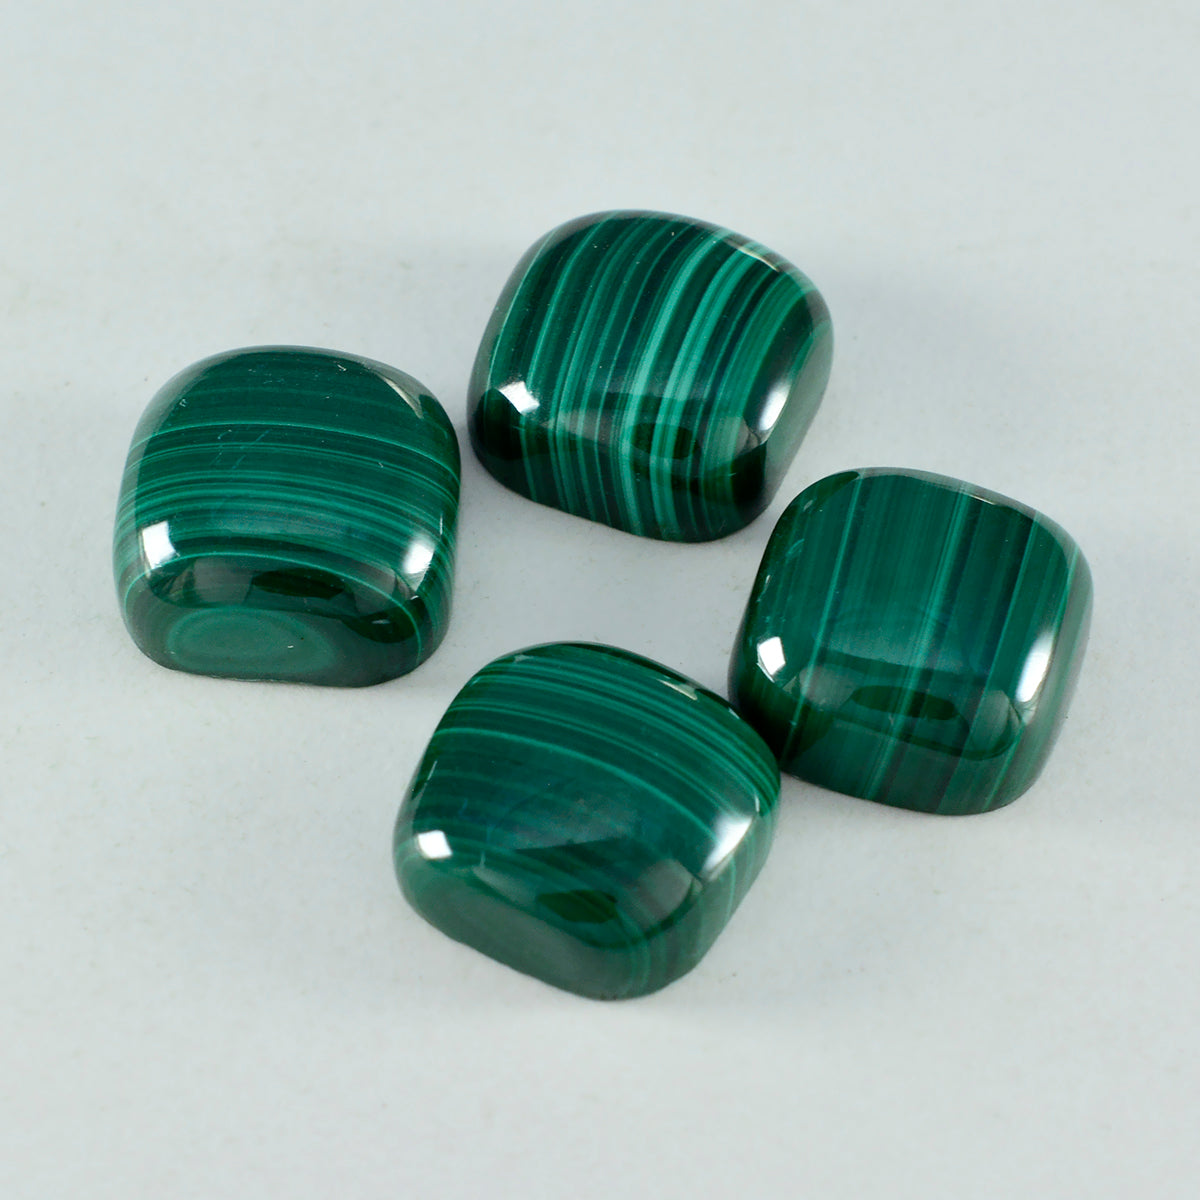 riyogems 1 pieza cabujón de malaquita verde 7x7 mm forma de cojín piedra preciosa de calidad dulce